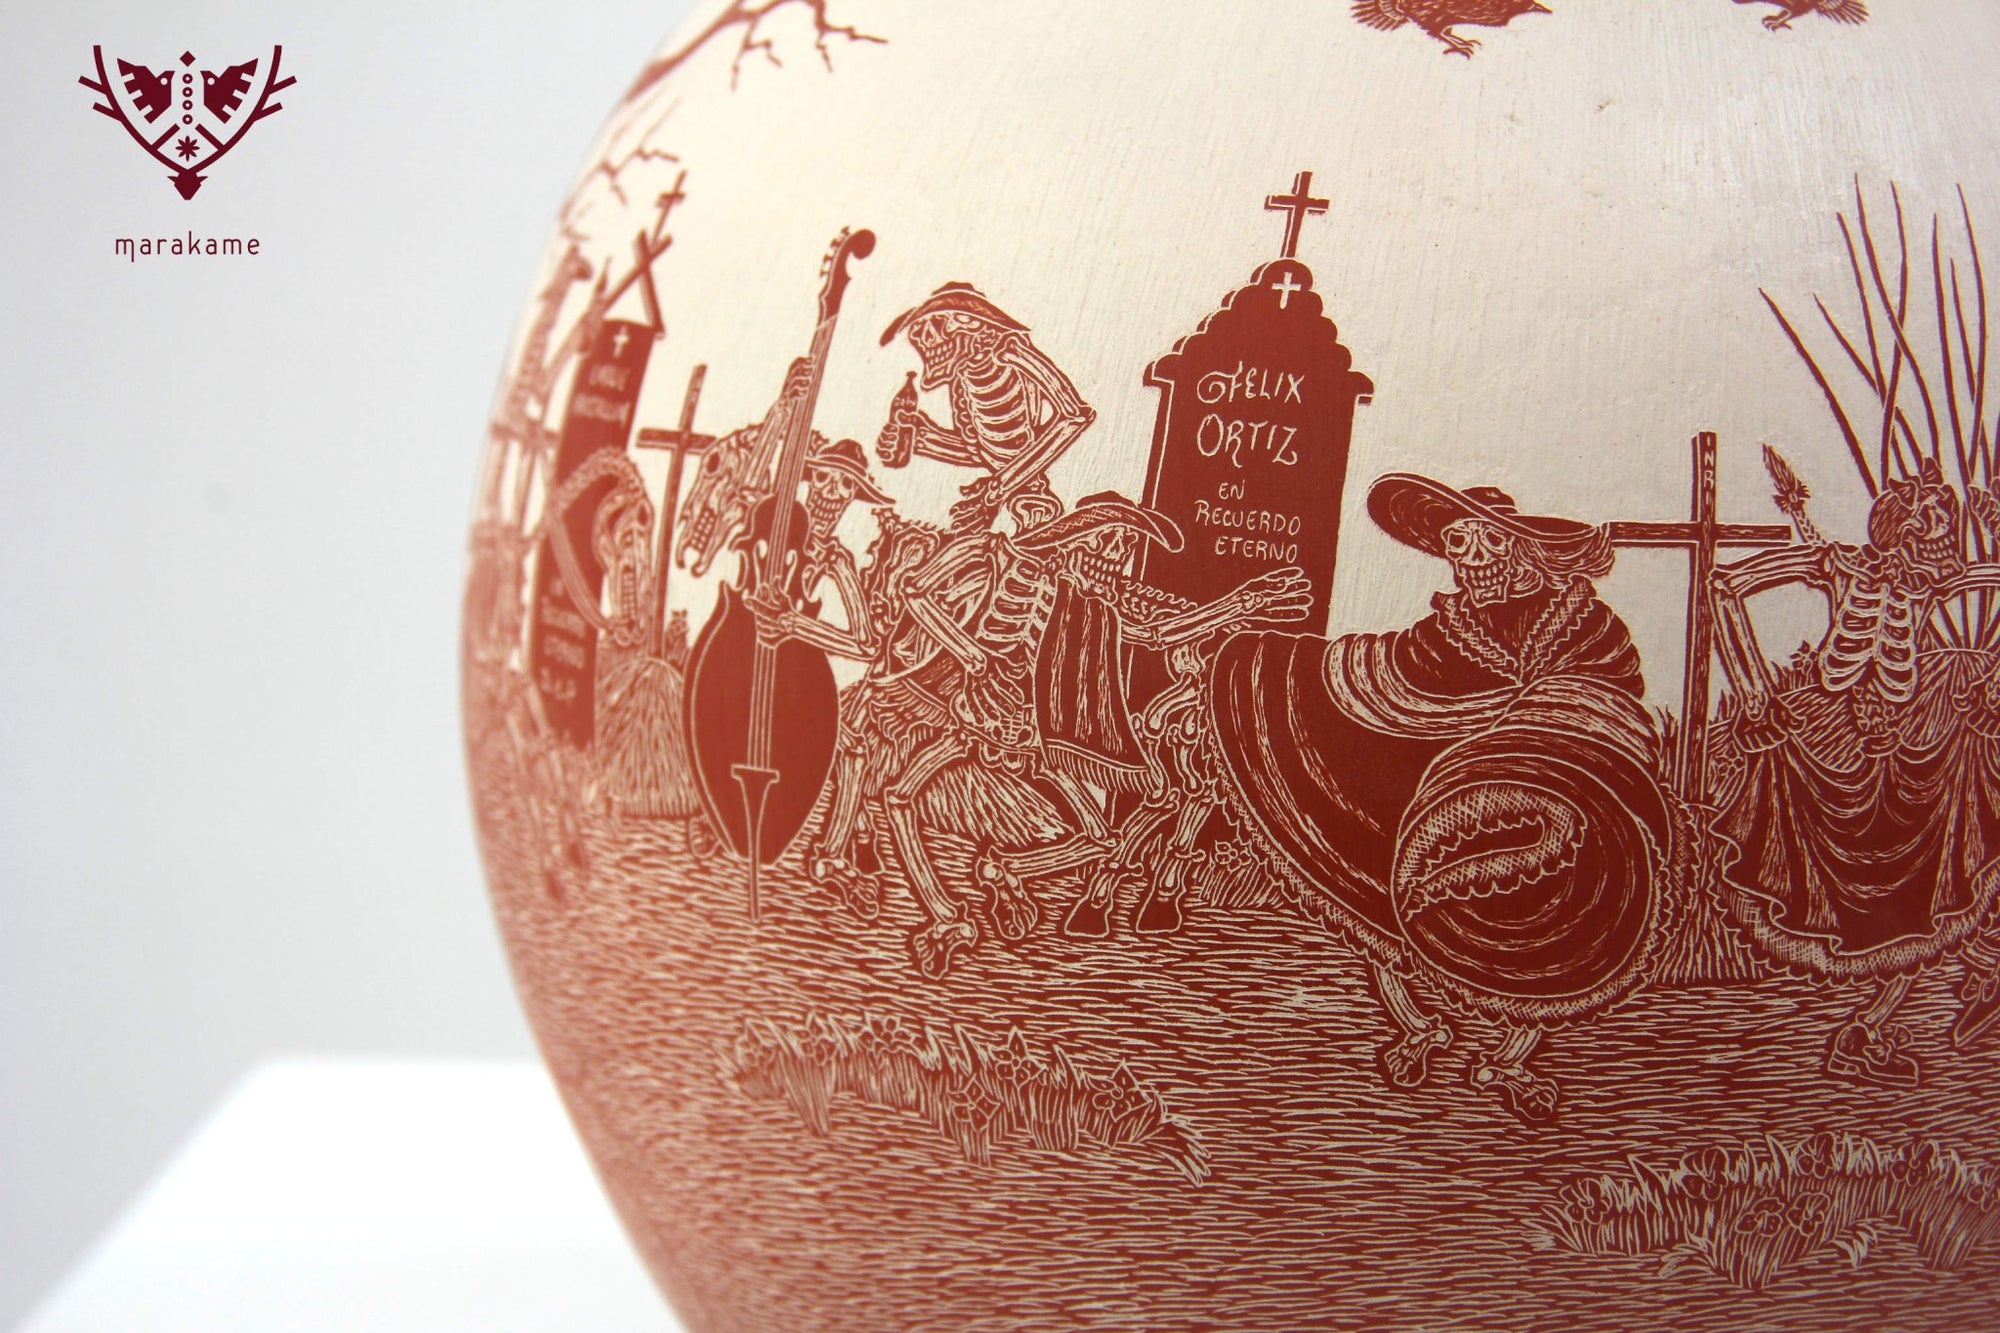 Mata Ortiz Ceramics - Day of the Dead - Conviviality in the Cemetery - Huichol Art - Marakame